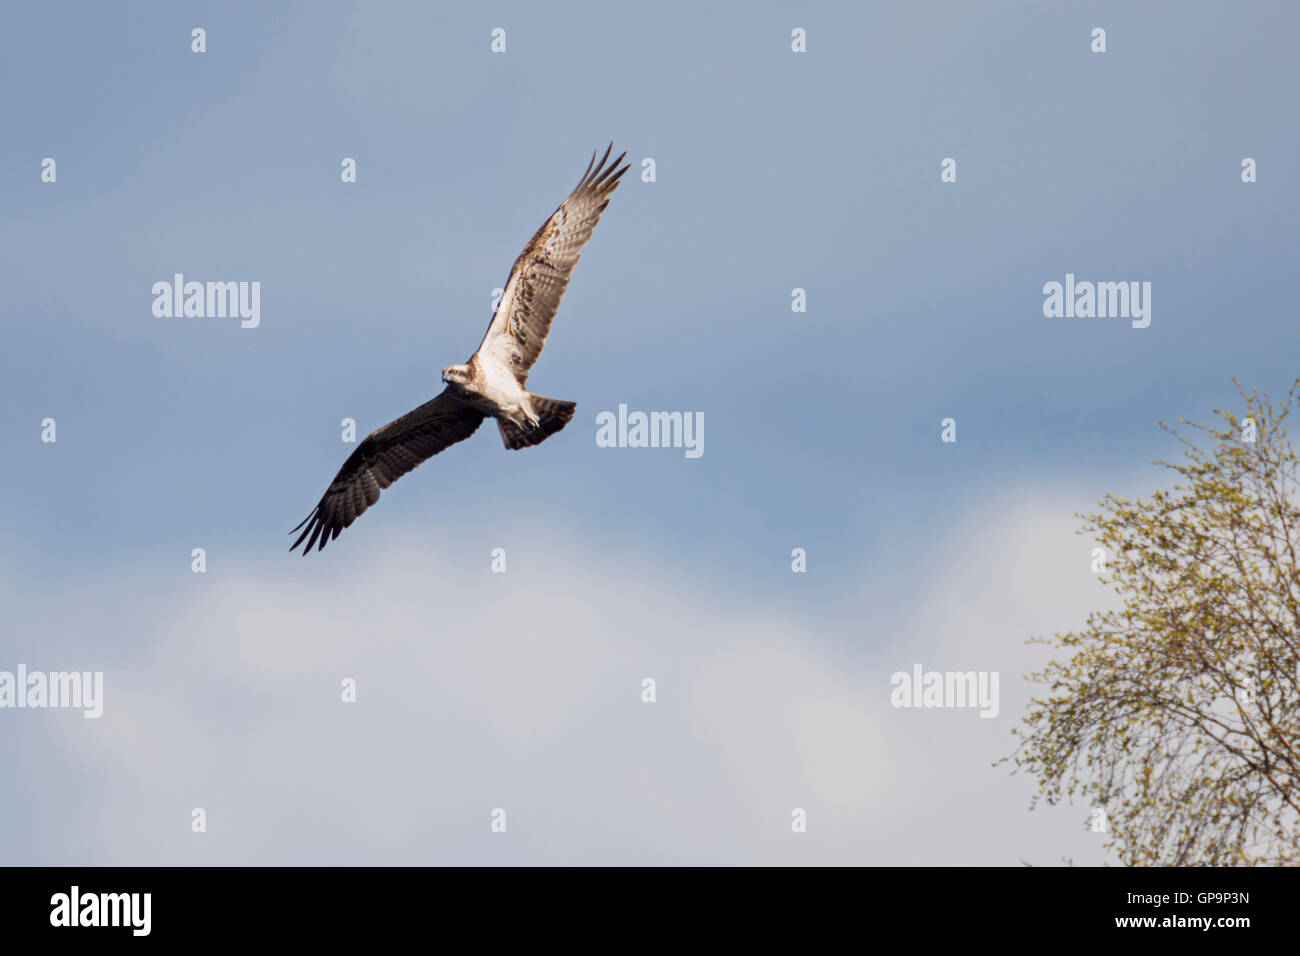 Western Osprey / Fischadler ( Pandion haliaetus ) in flight, against blue-white sky, natural environment, wildlife, Sweden. Stock Photo